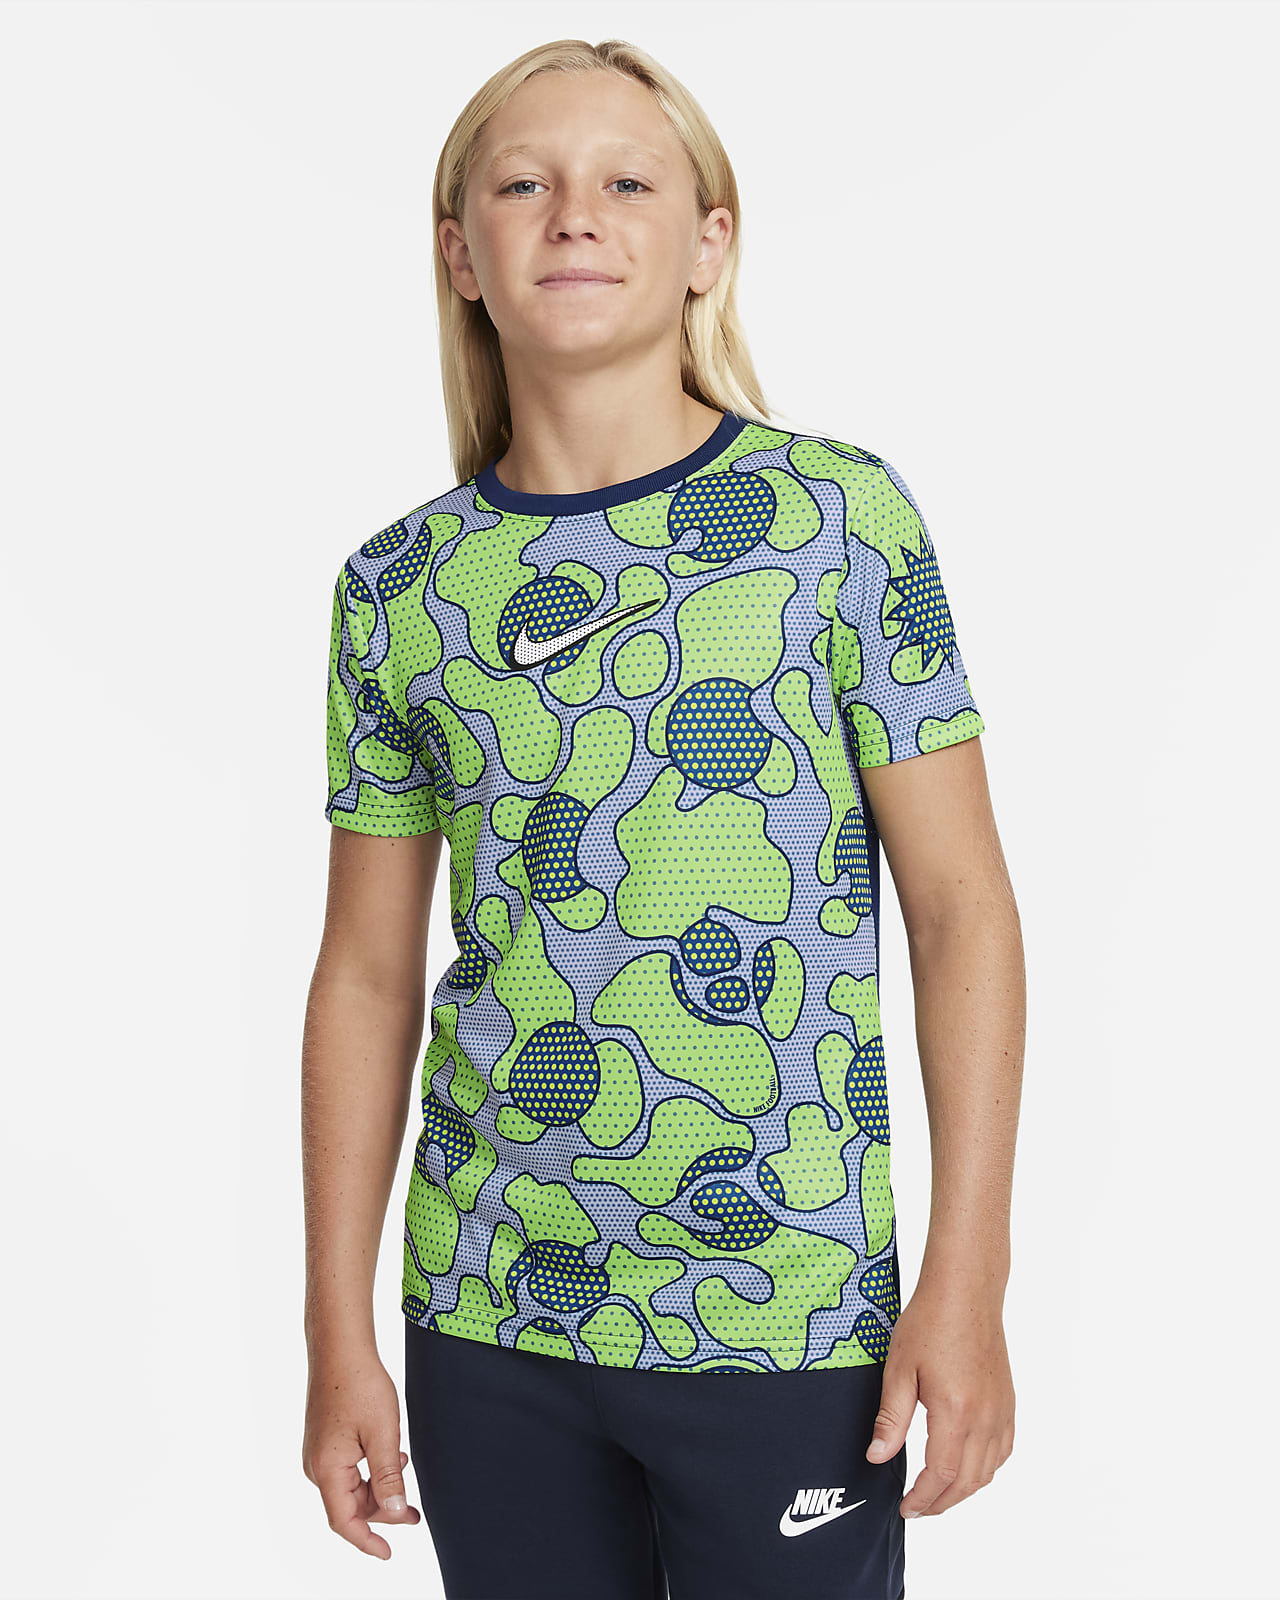 Ποδοσφαιρική μπλούζα Nike Dri-FIT για μεγάλα παιδιά